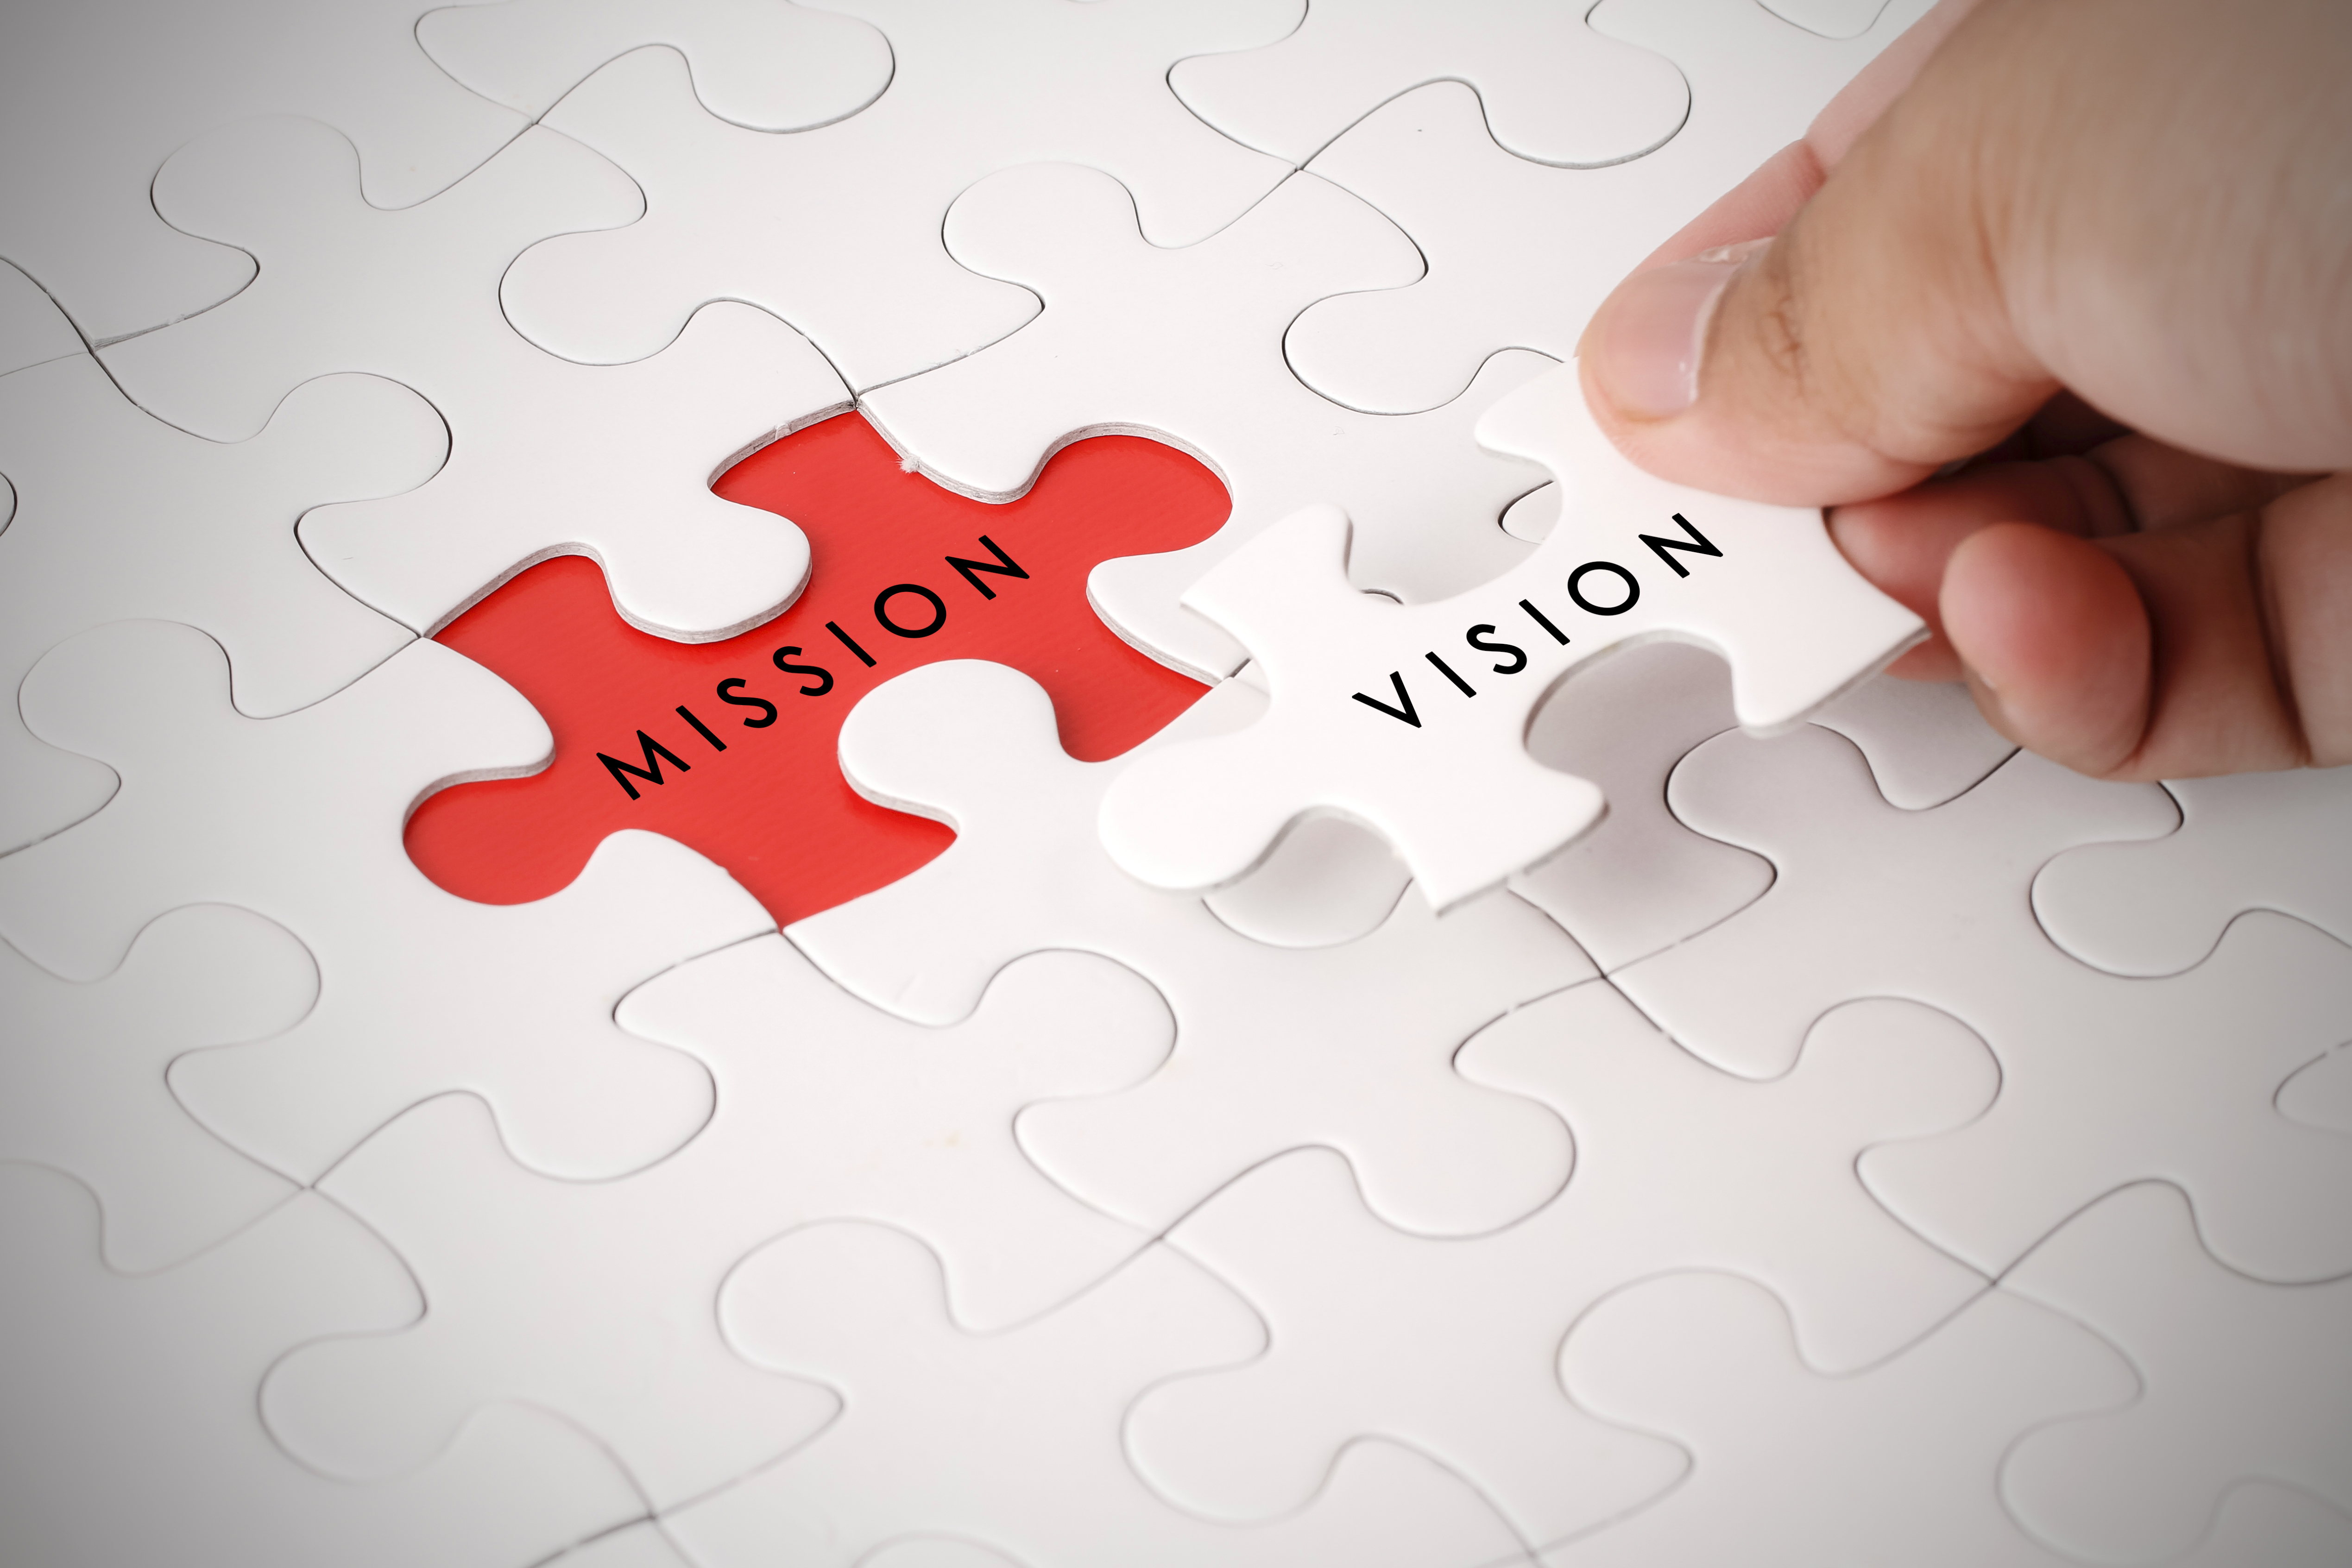 「ビジョン・ミッションとは」のイメージ画像。